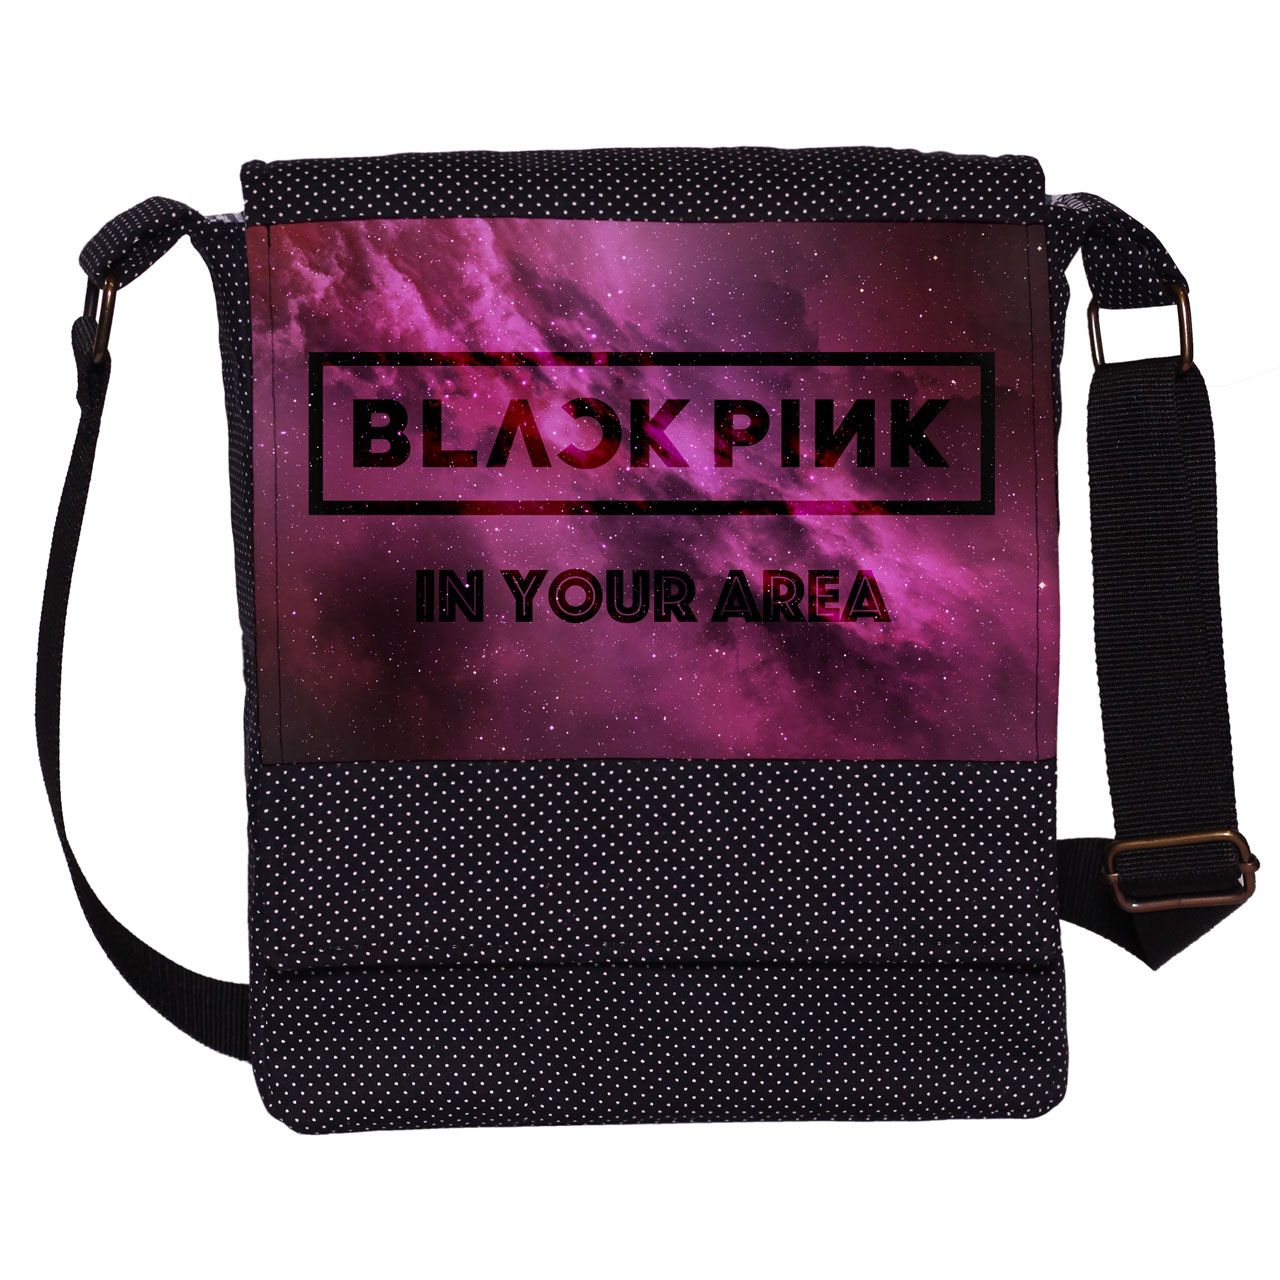 کیف دوشی دخترانه چی چاپ طرح Black Pink کد 65669 -  - 1